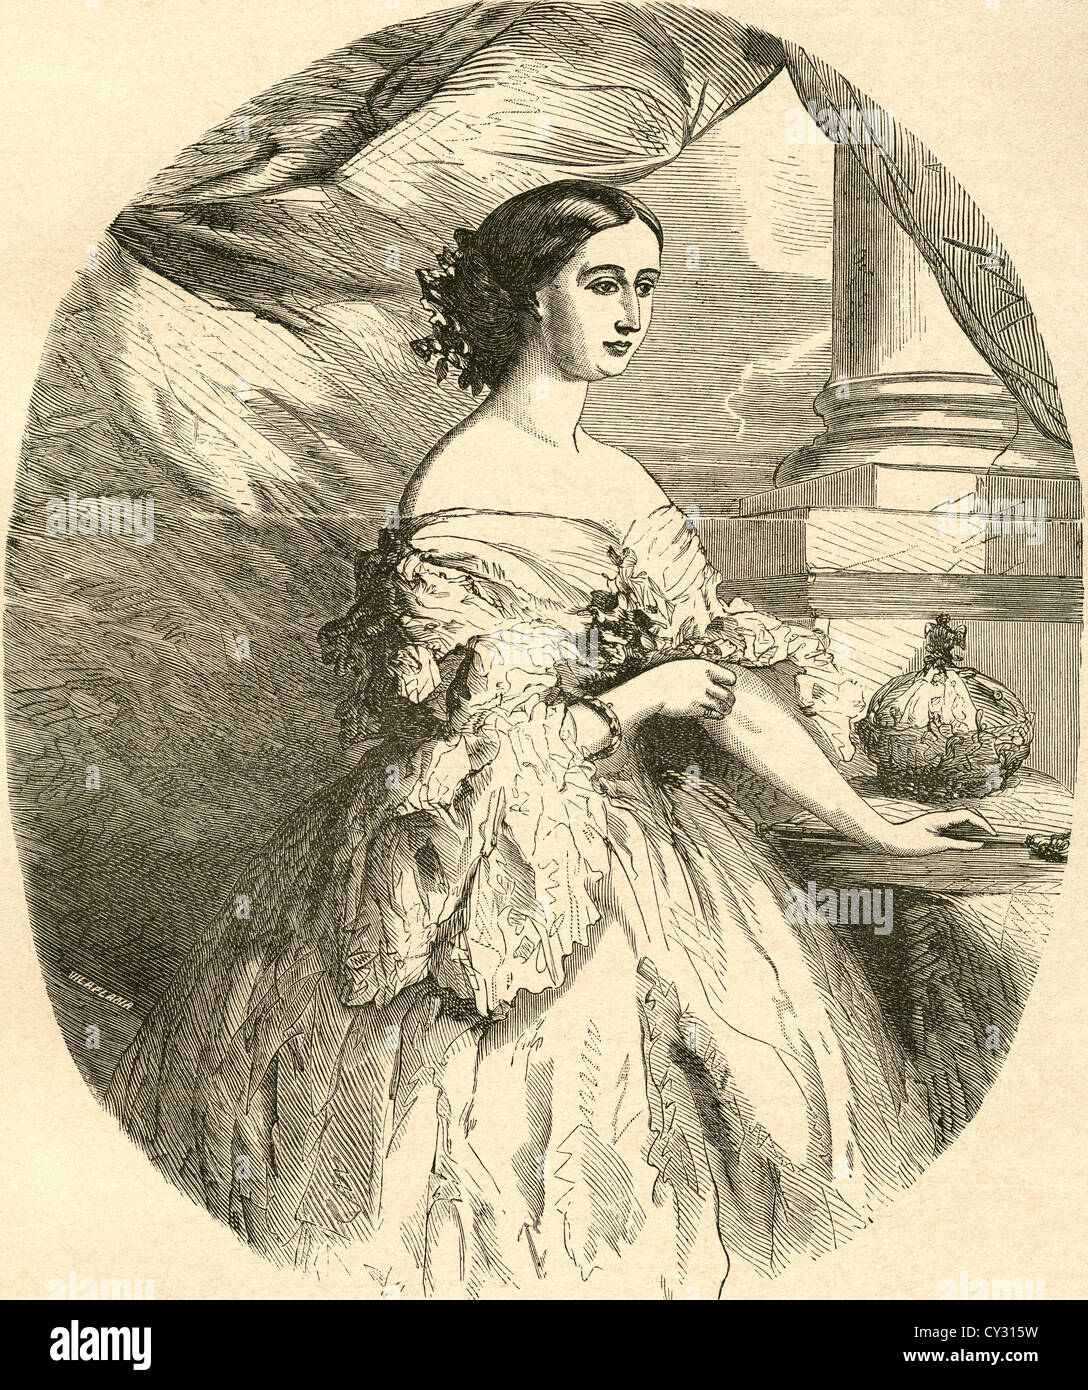 Franz Xaver Winterhalter, Portrait of the Empress Eugenie de Montijo de  Guzman de Teba (1826 - 1920)